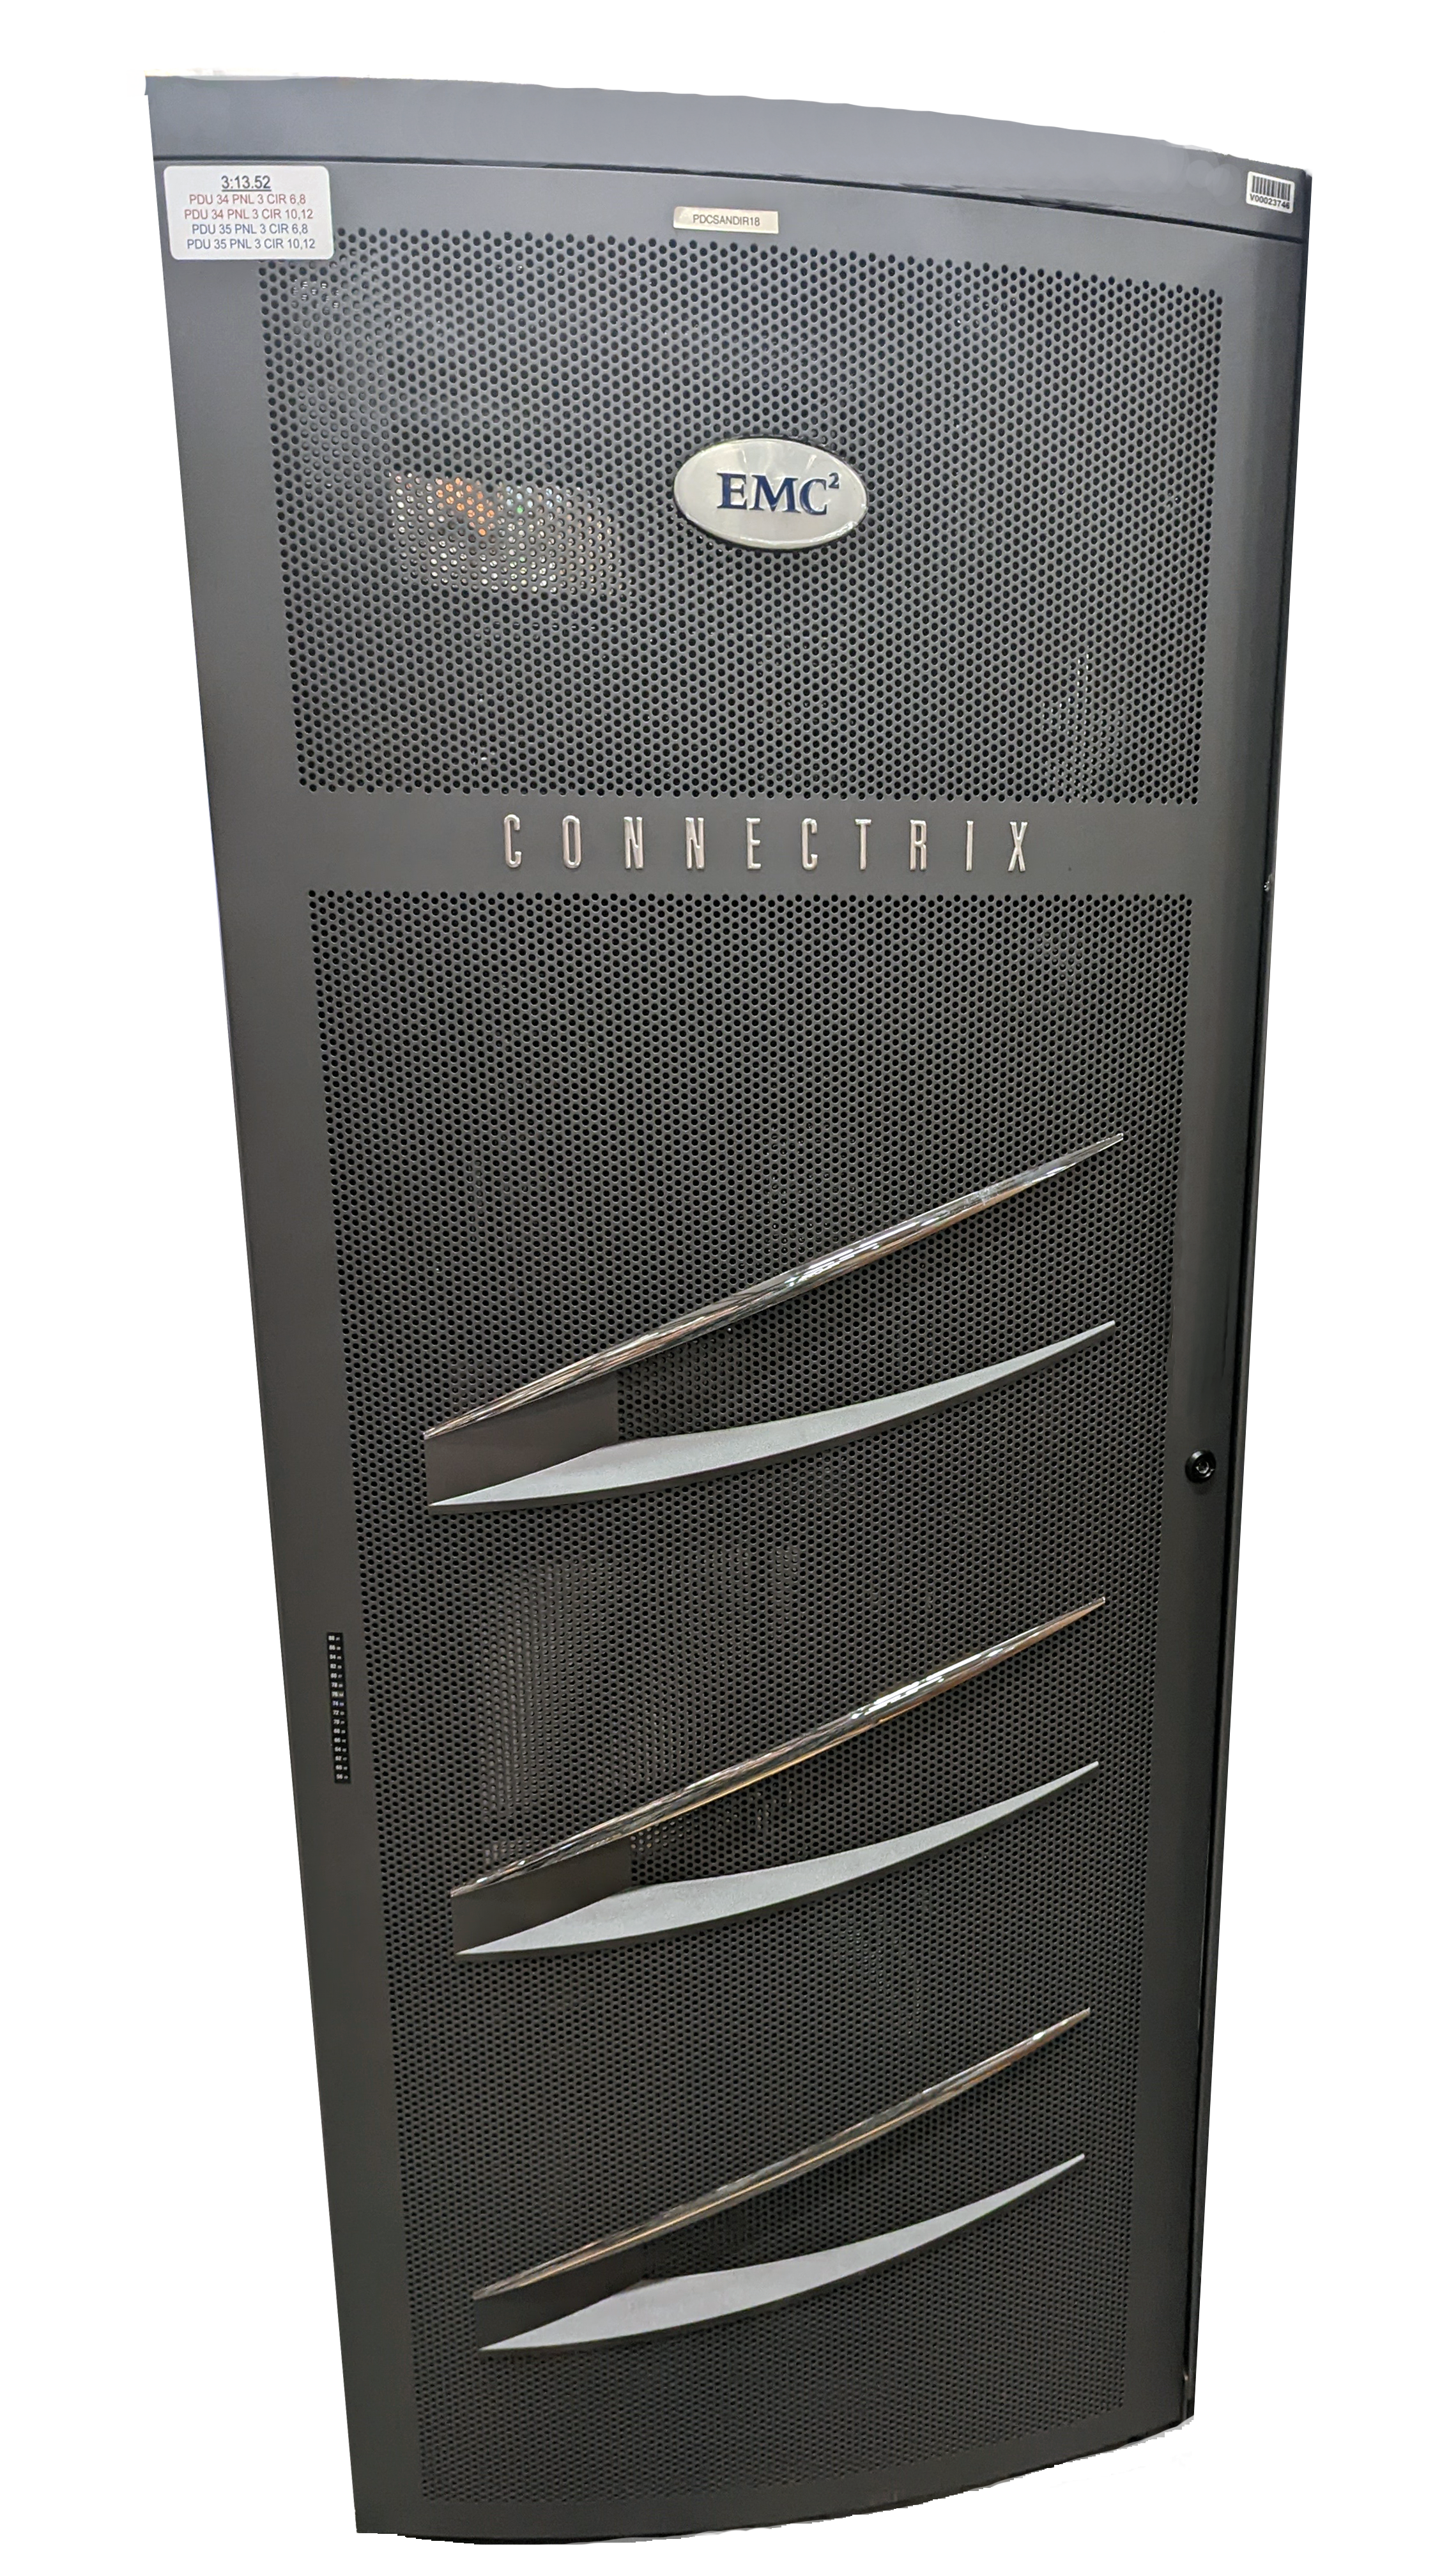 Dell-EMC-Connectrix-data-center-cabinets-EC-1700